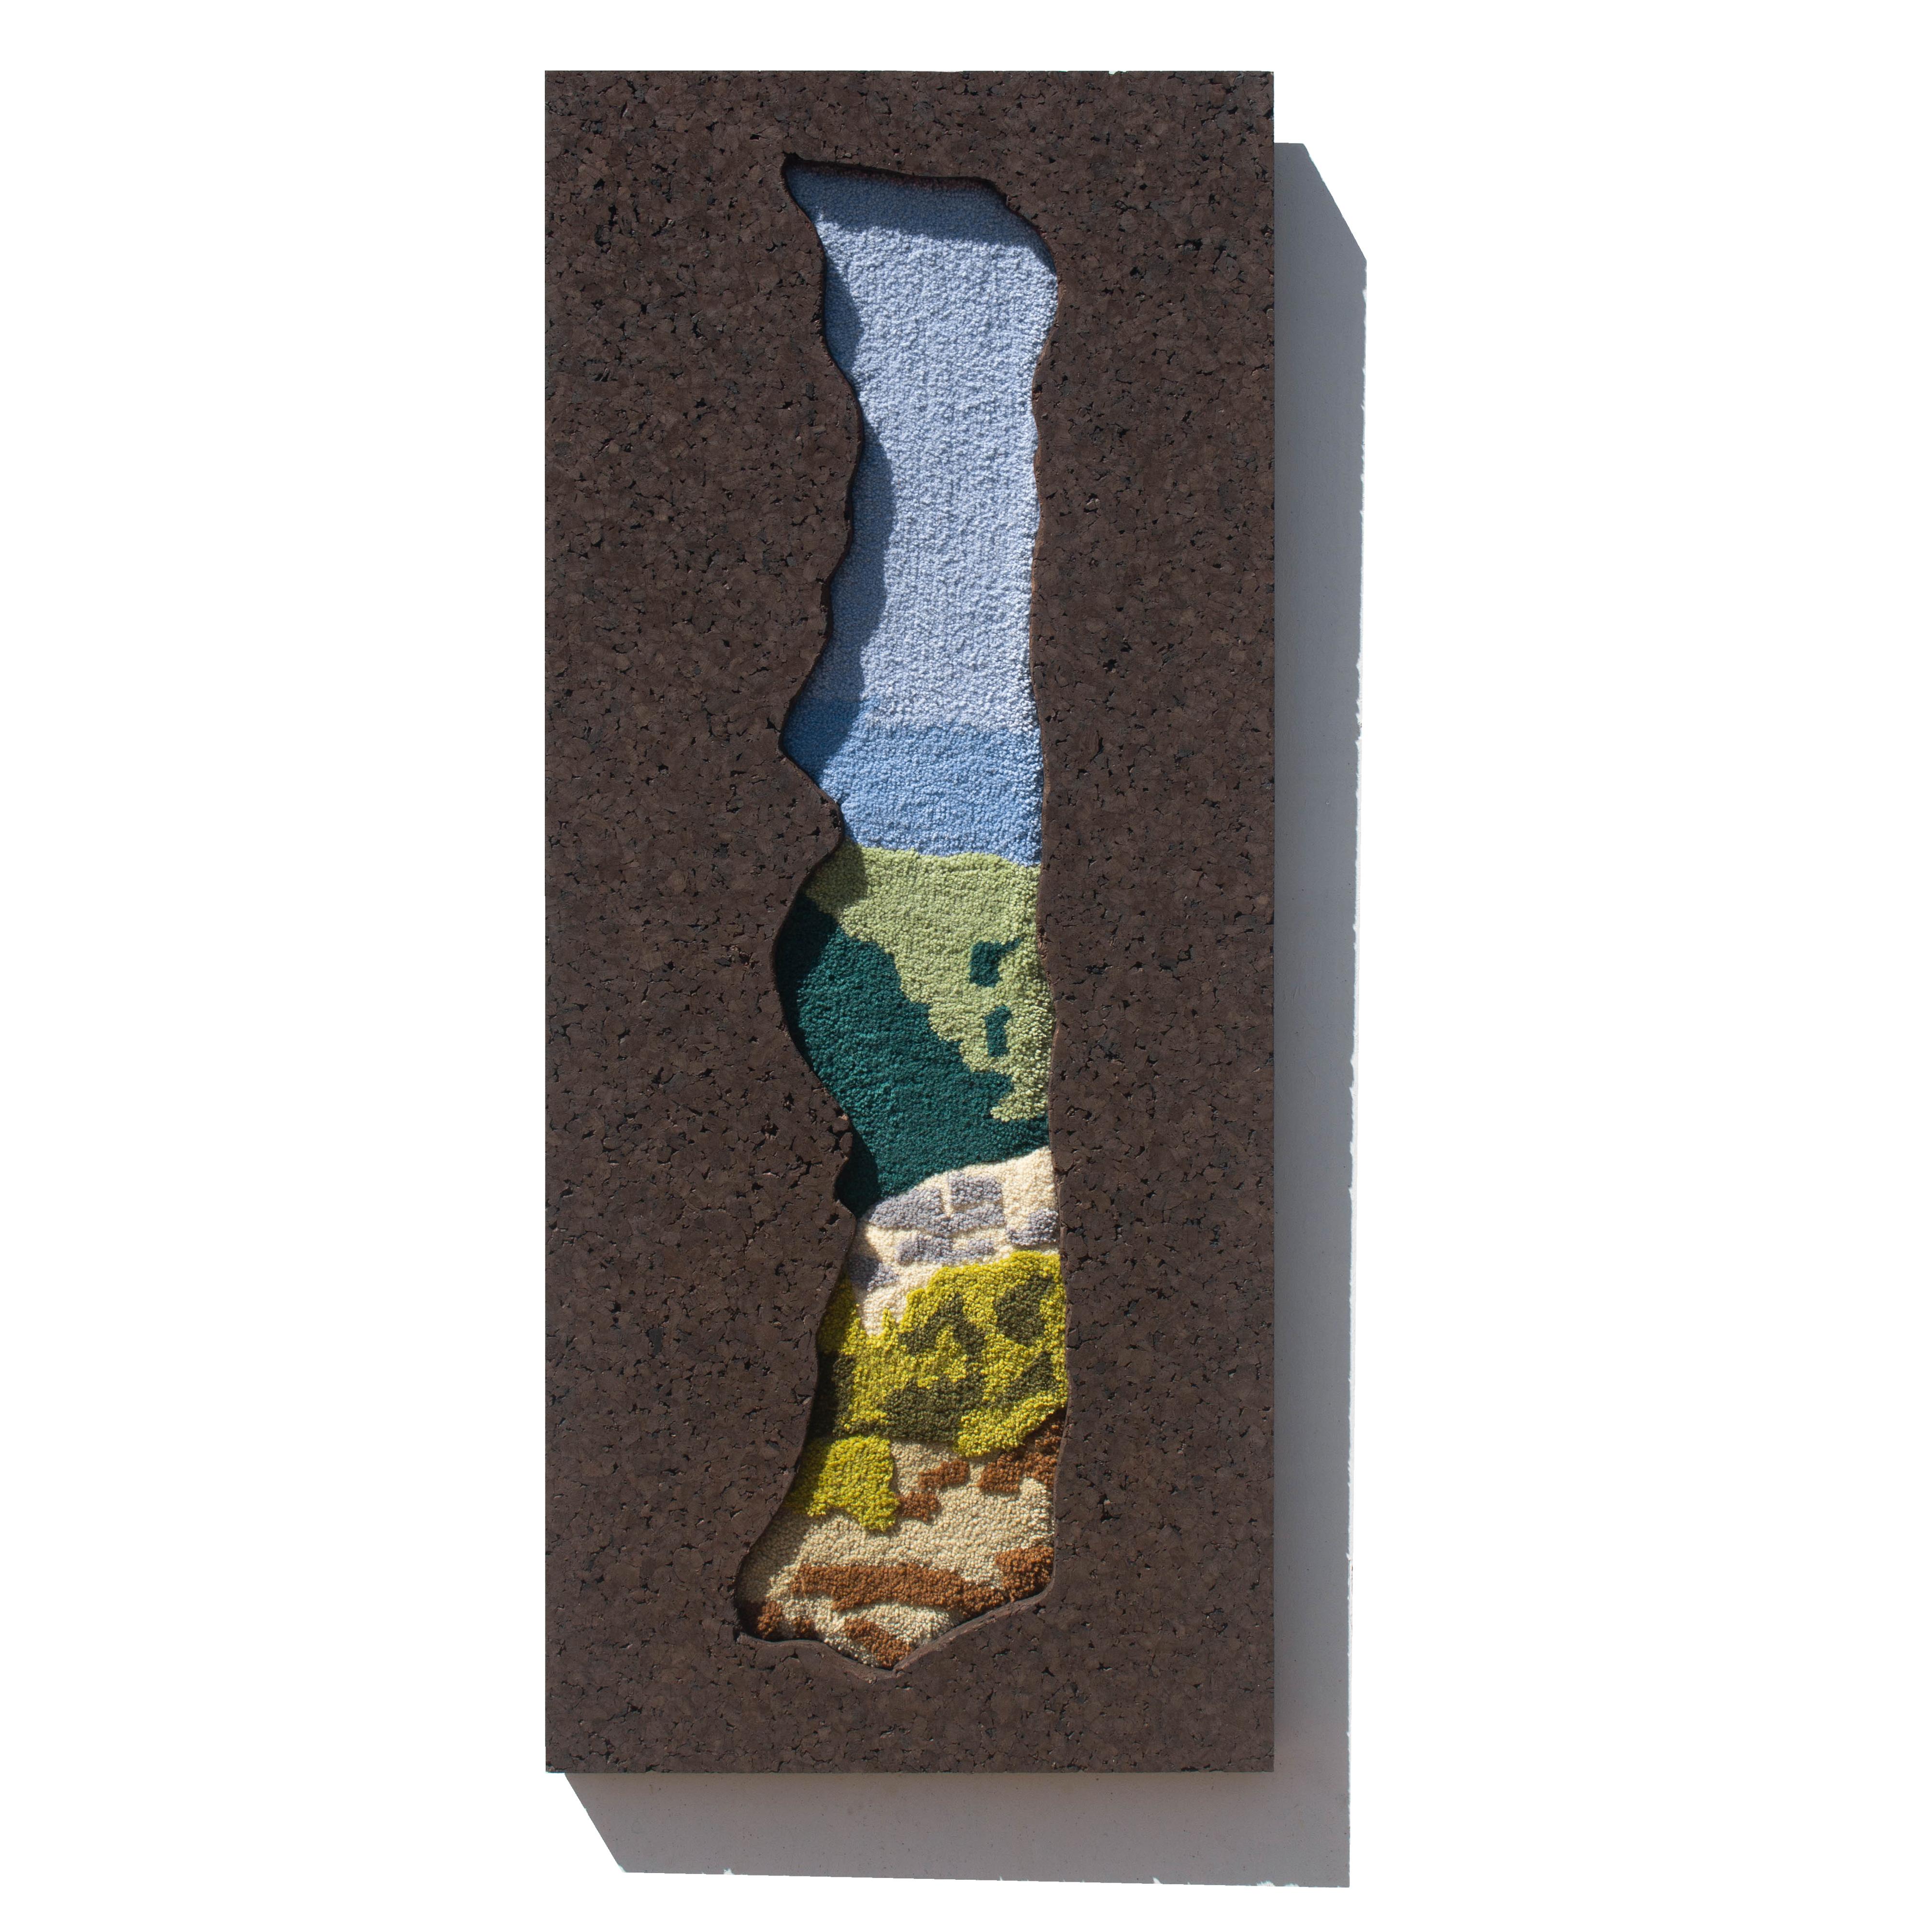 Der Wandteppich JANELA DISCRETA stellt ein Fenster zu einer wunderschönen portugiesischen Landschaft dar. Handgefertigter zeitgenössischer Wandteppich aus reiner portugiesischer Wolle, mit Tufting-Pistole und Schnitztechniken, das Bassrelief ist mit